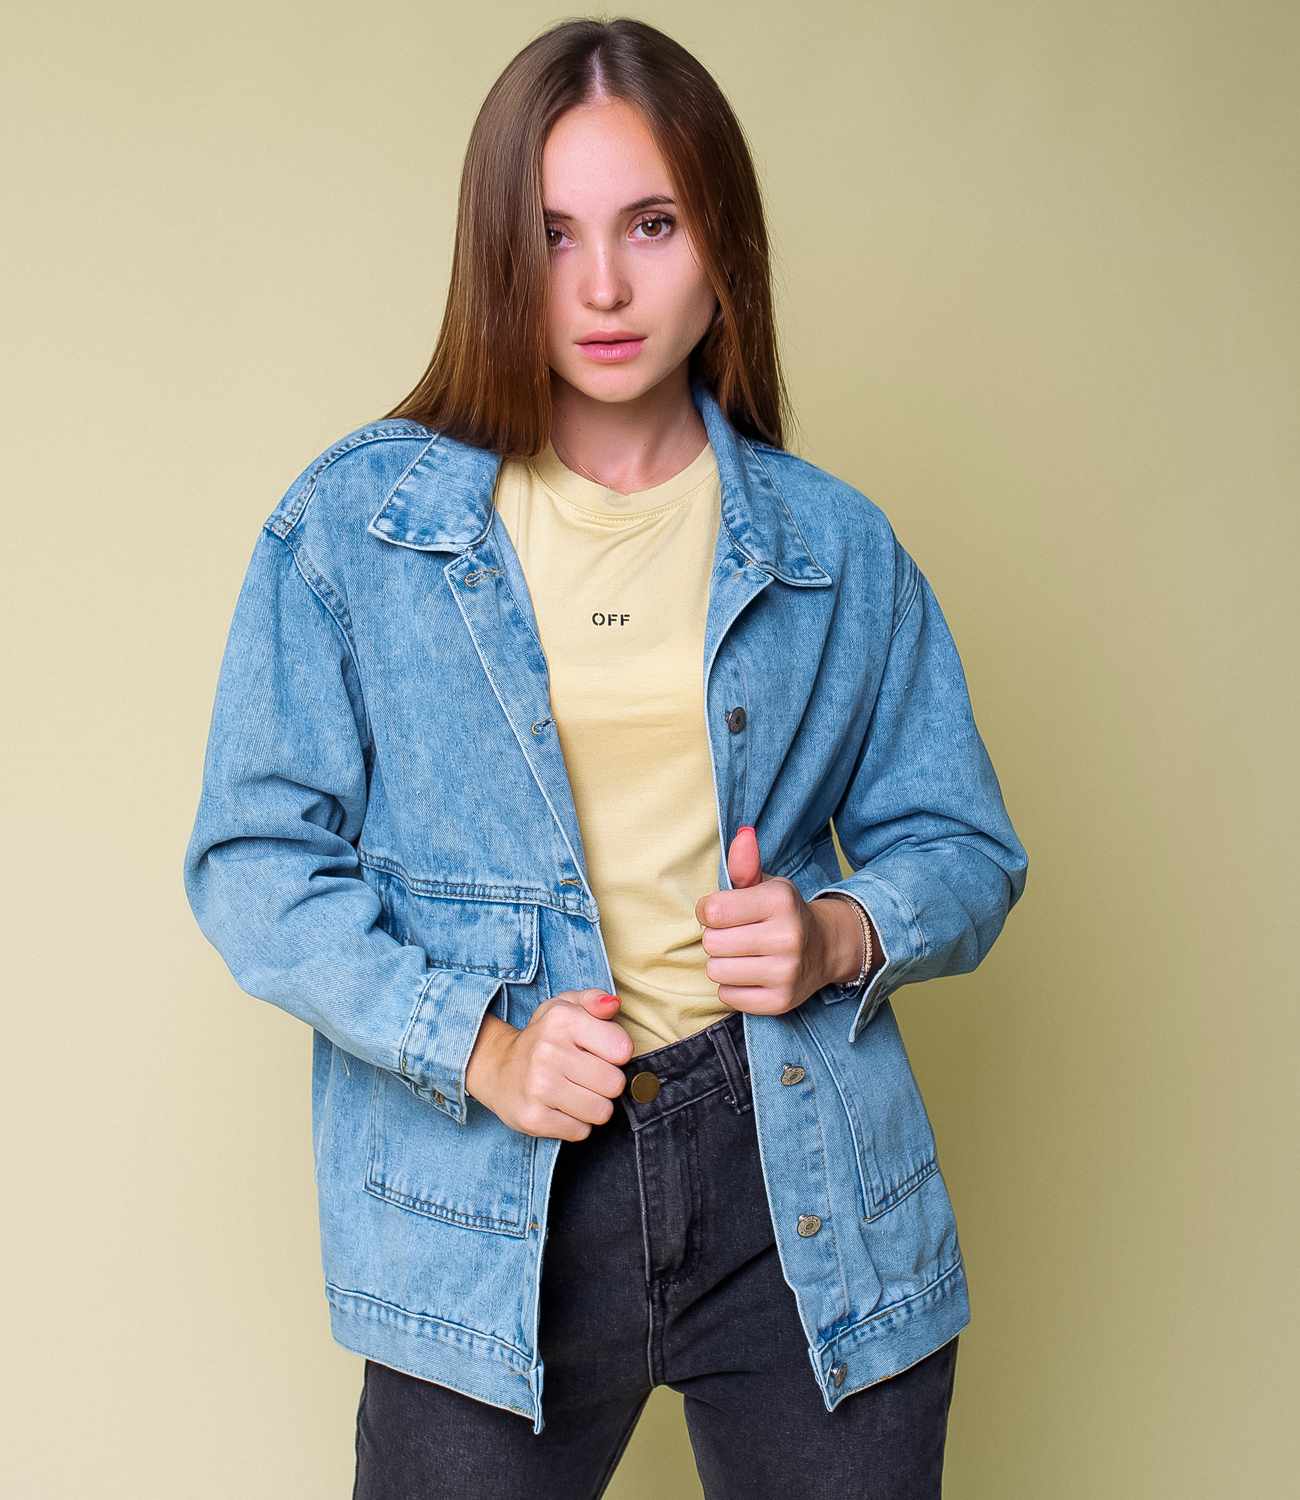 Джинсовая куртка #КТ513, цвет голубой - купить женские джинсовые курткиоптом